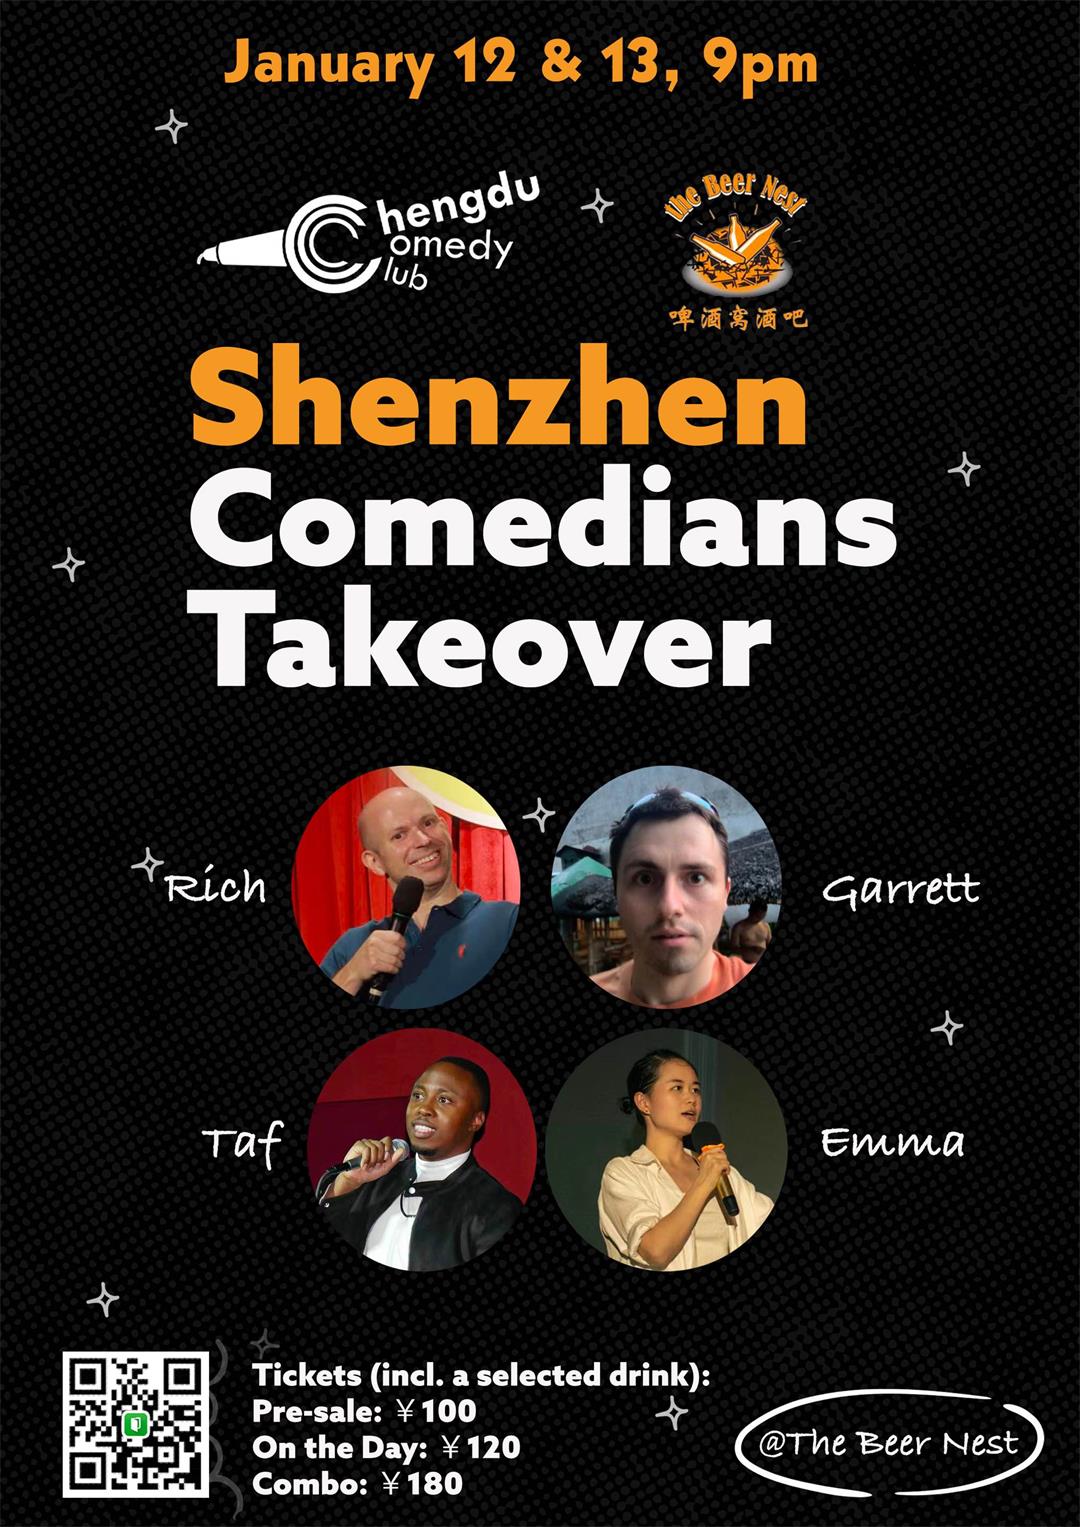 2023 Shenzhen Comedians Takeover chengdu-expat.jpg